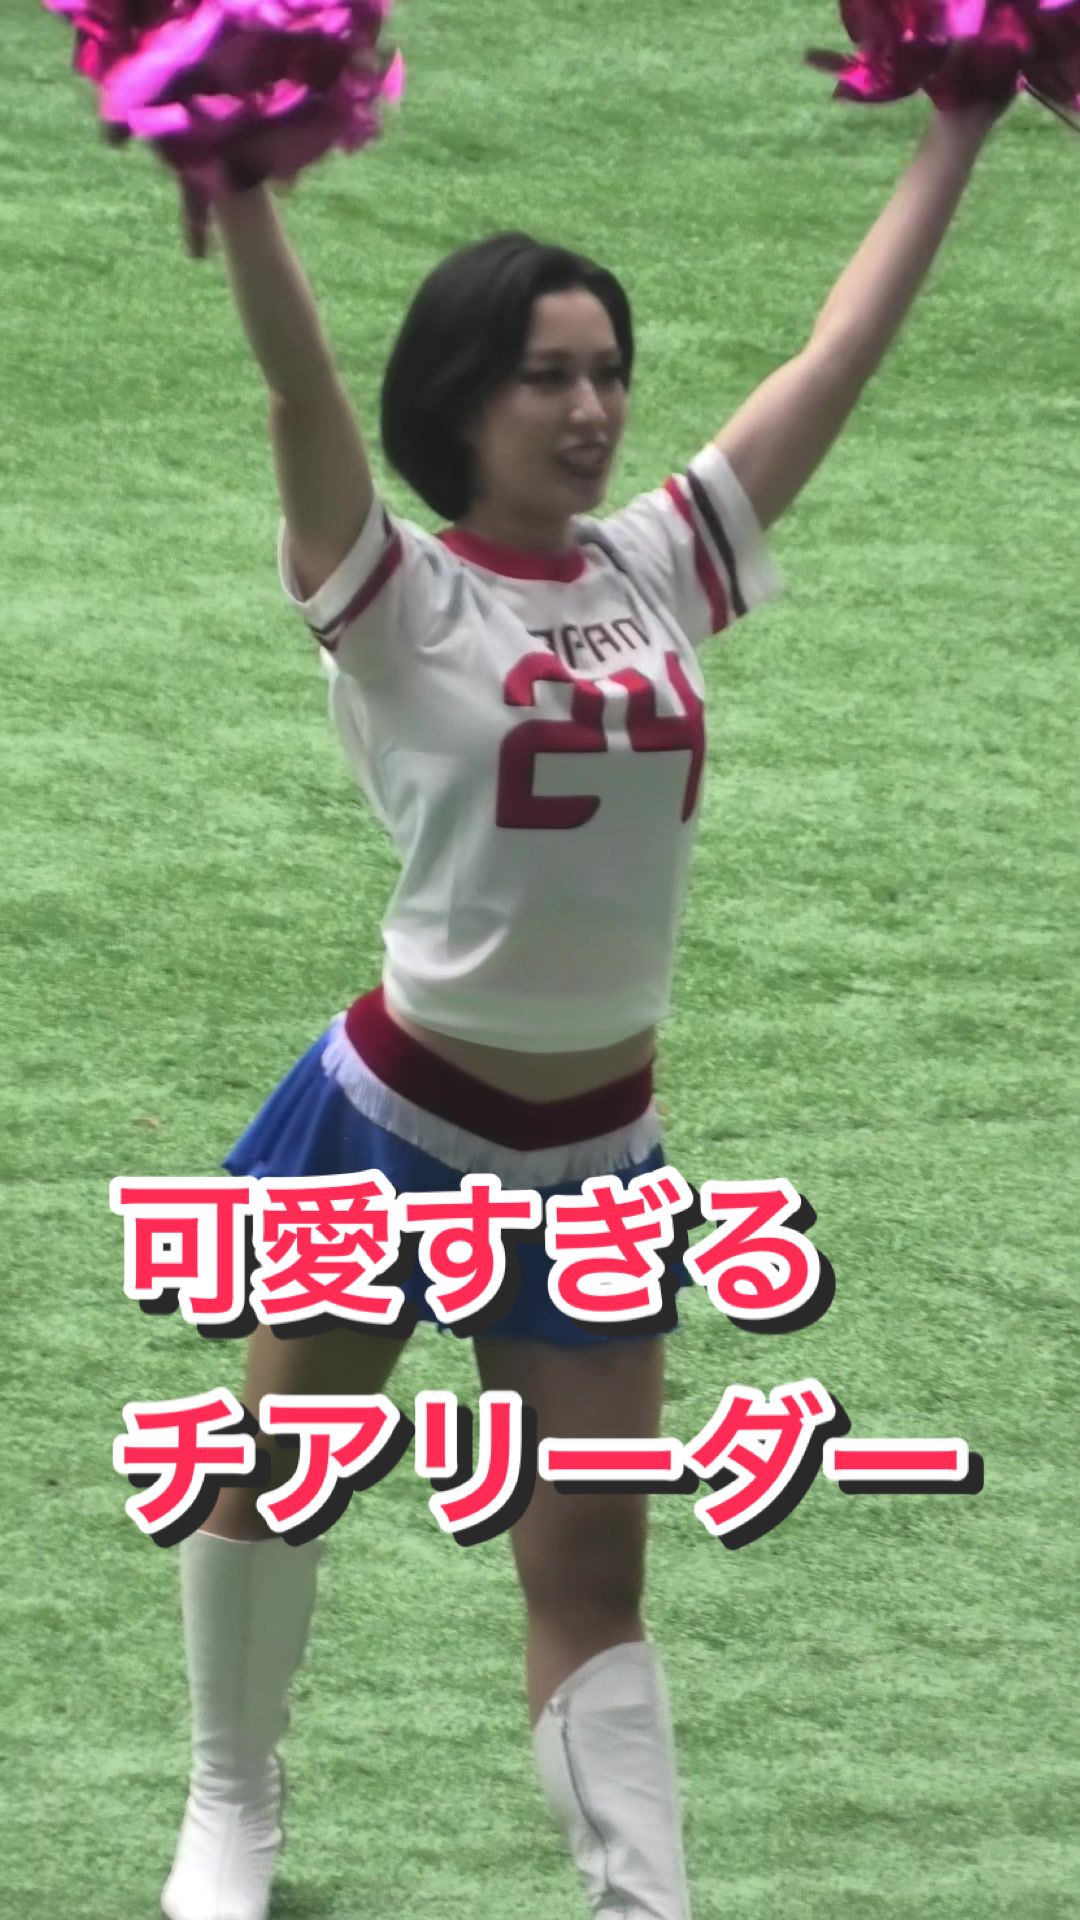 【目の保養！美人チアリーダー】#kawaii #ブレイブtv #bravetv #japanesegirl #cheerleader 